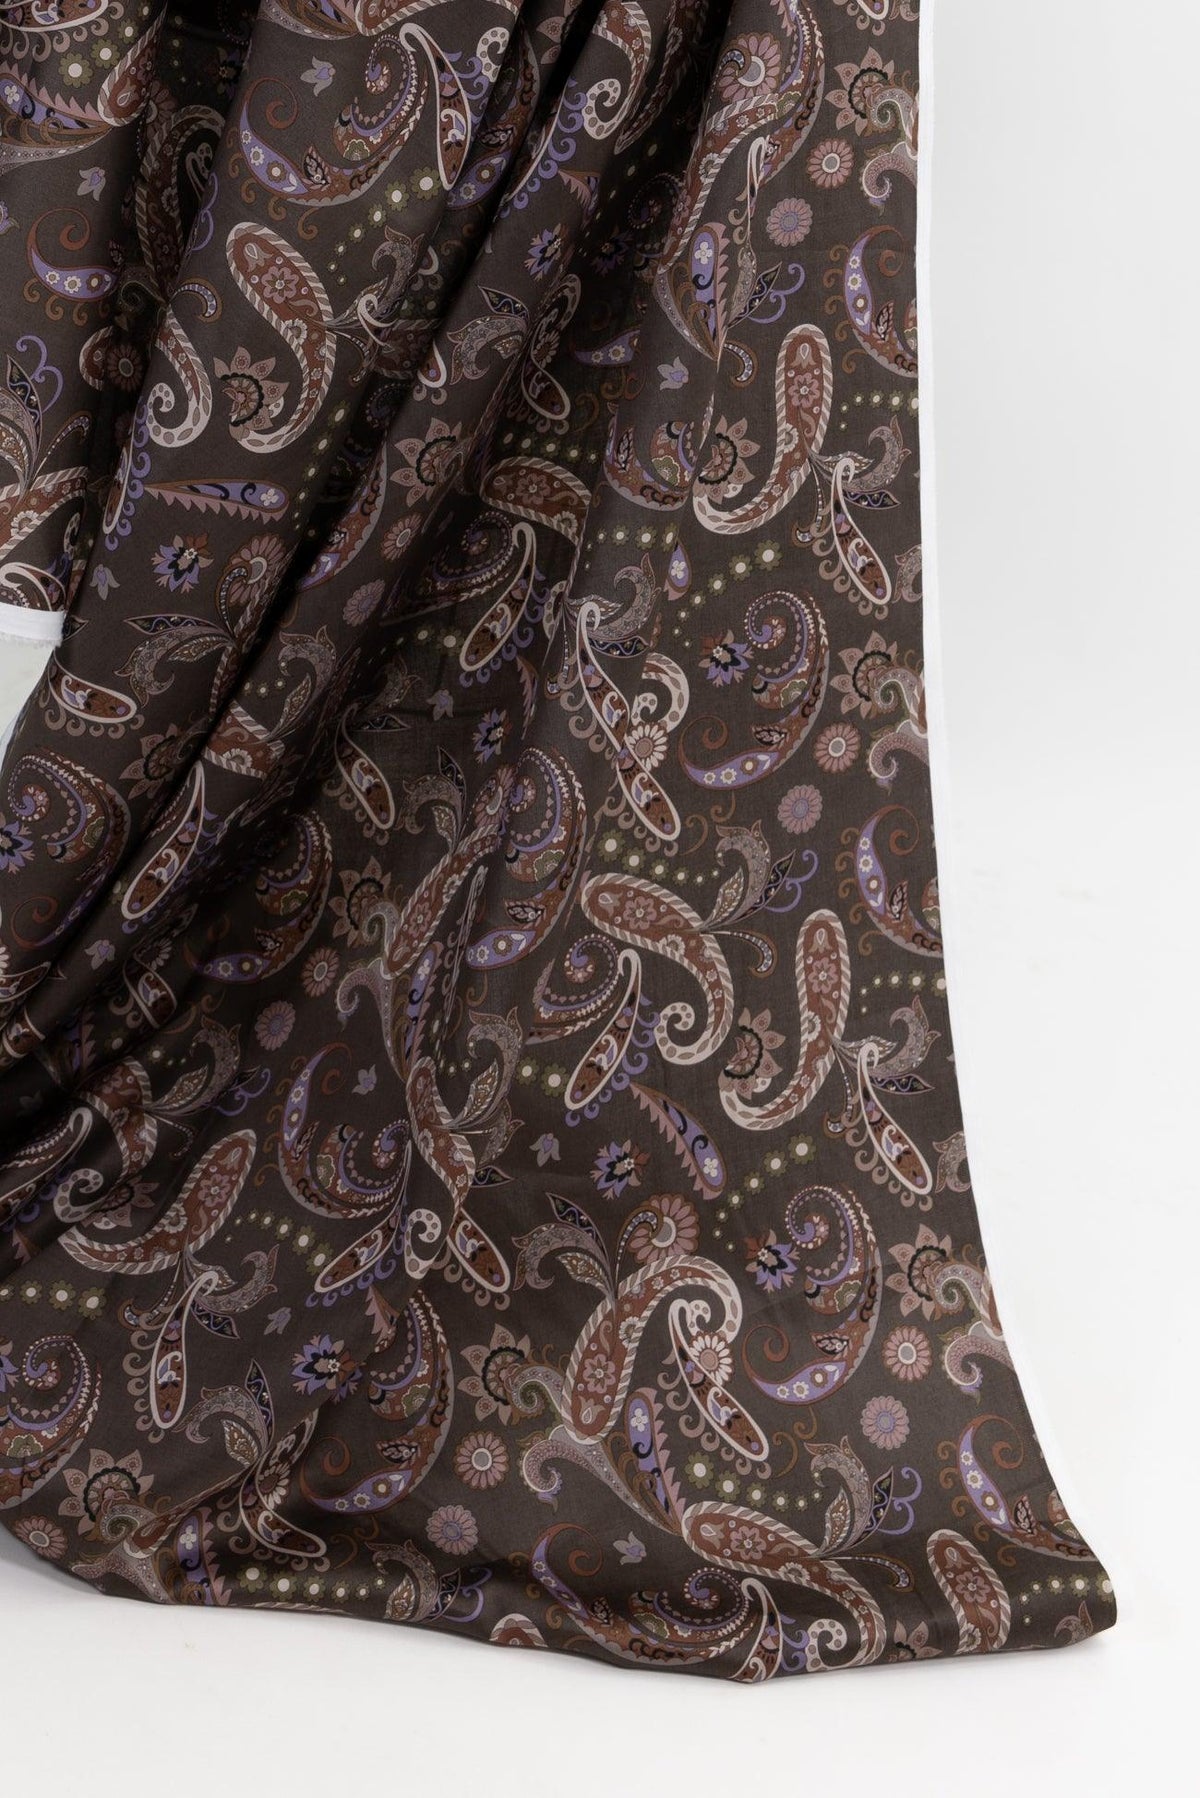 Austen Paisley Japanese Cotton Woven - Marcy Tilton Fabrics